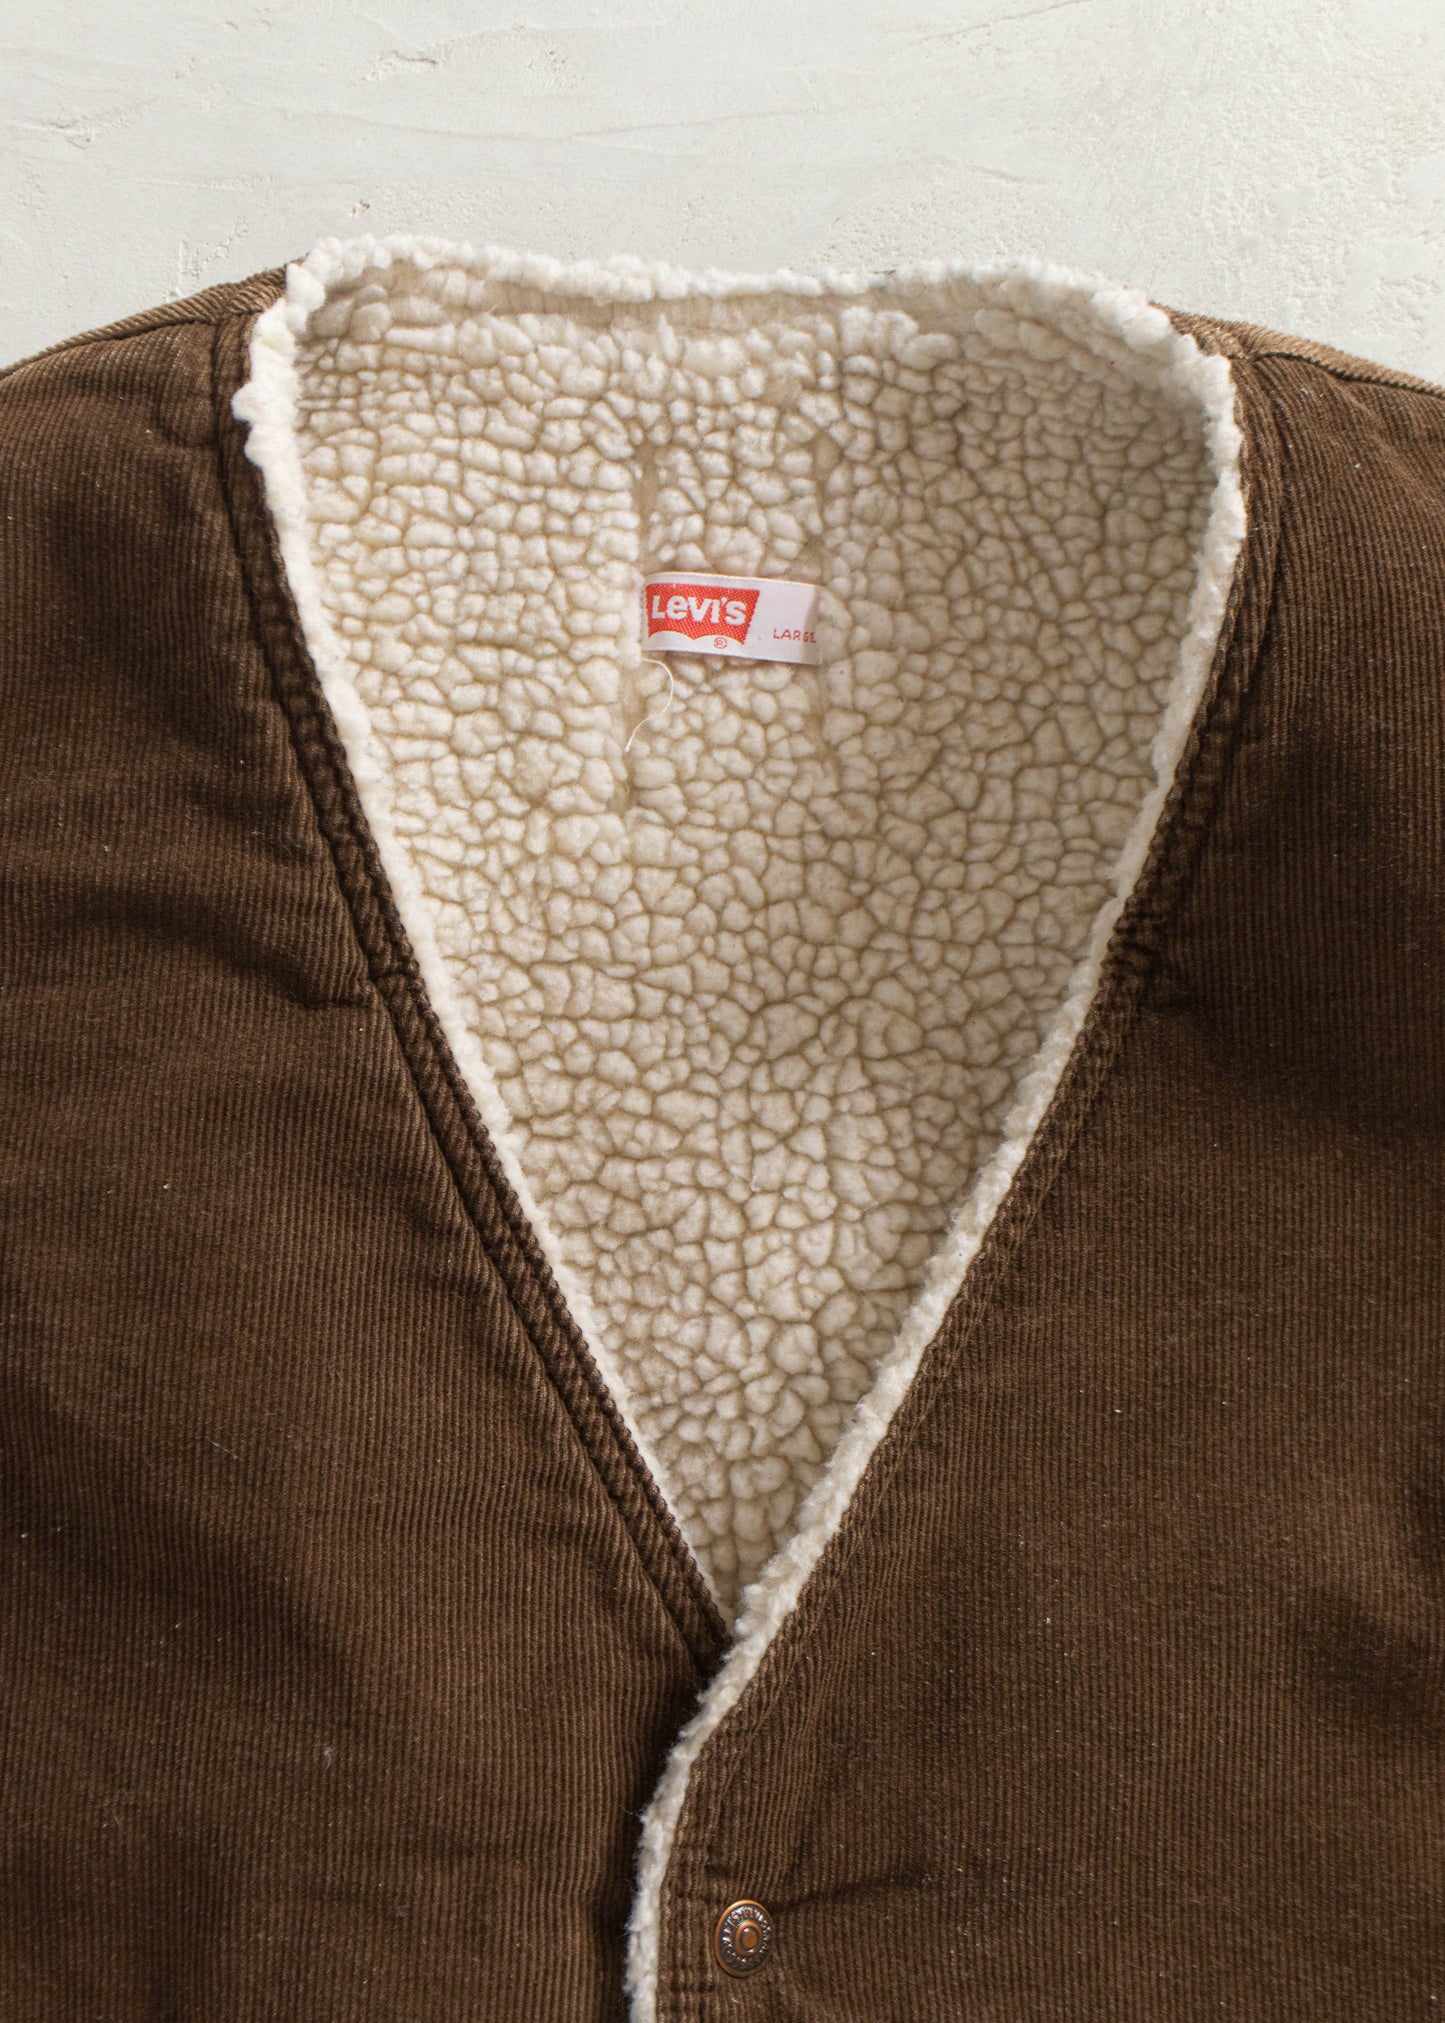 1970s Levi's Corduroy Sherpa Lined Vest Size M/L